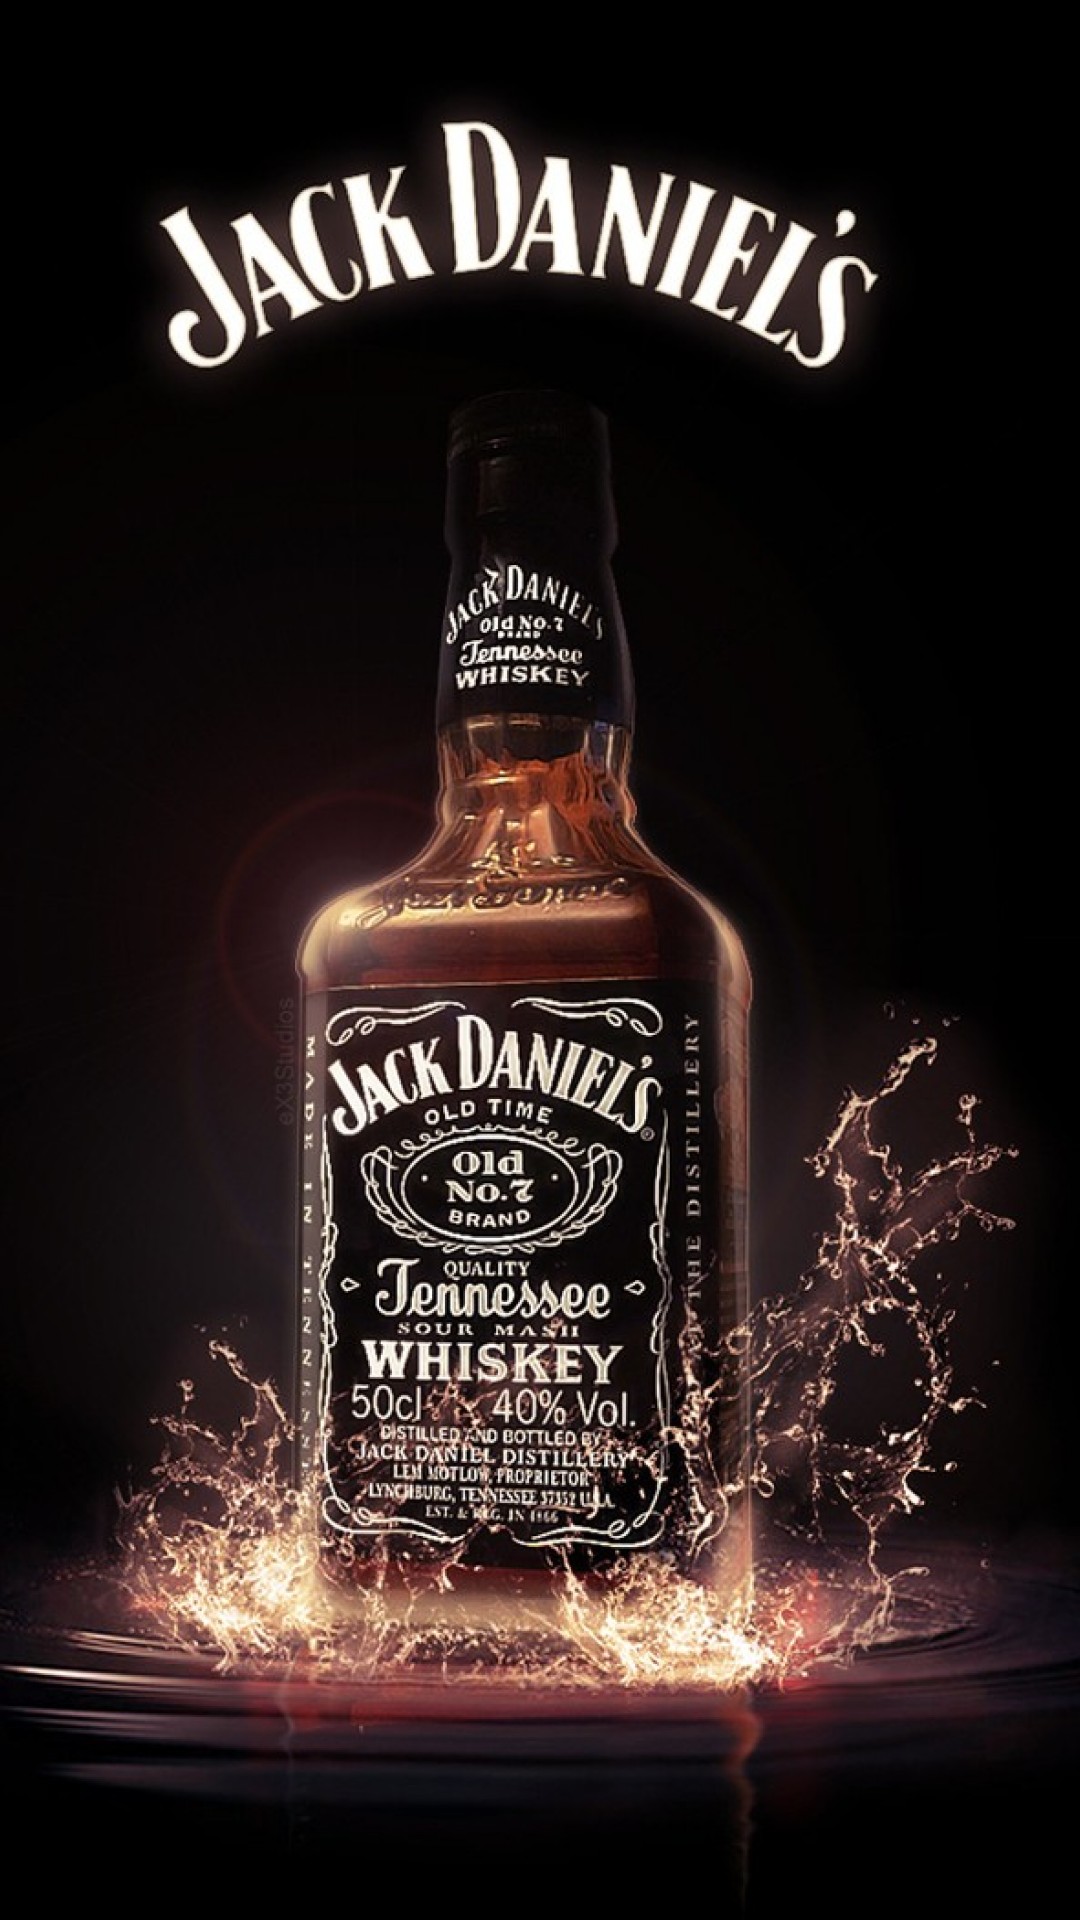 Jack Daniels Hd Wallpaper for Desktop and Mobiles iPhone 6 / 6S Plus - HD  Wallpaper 